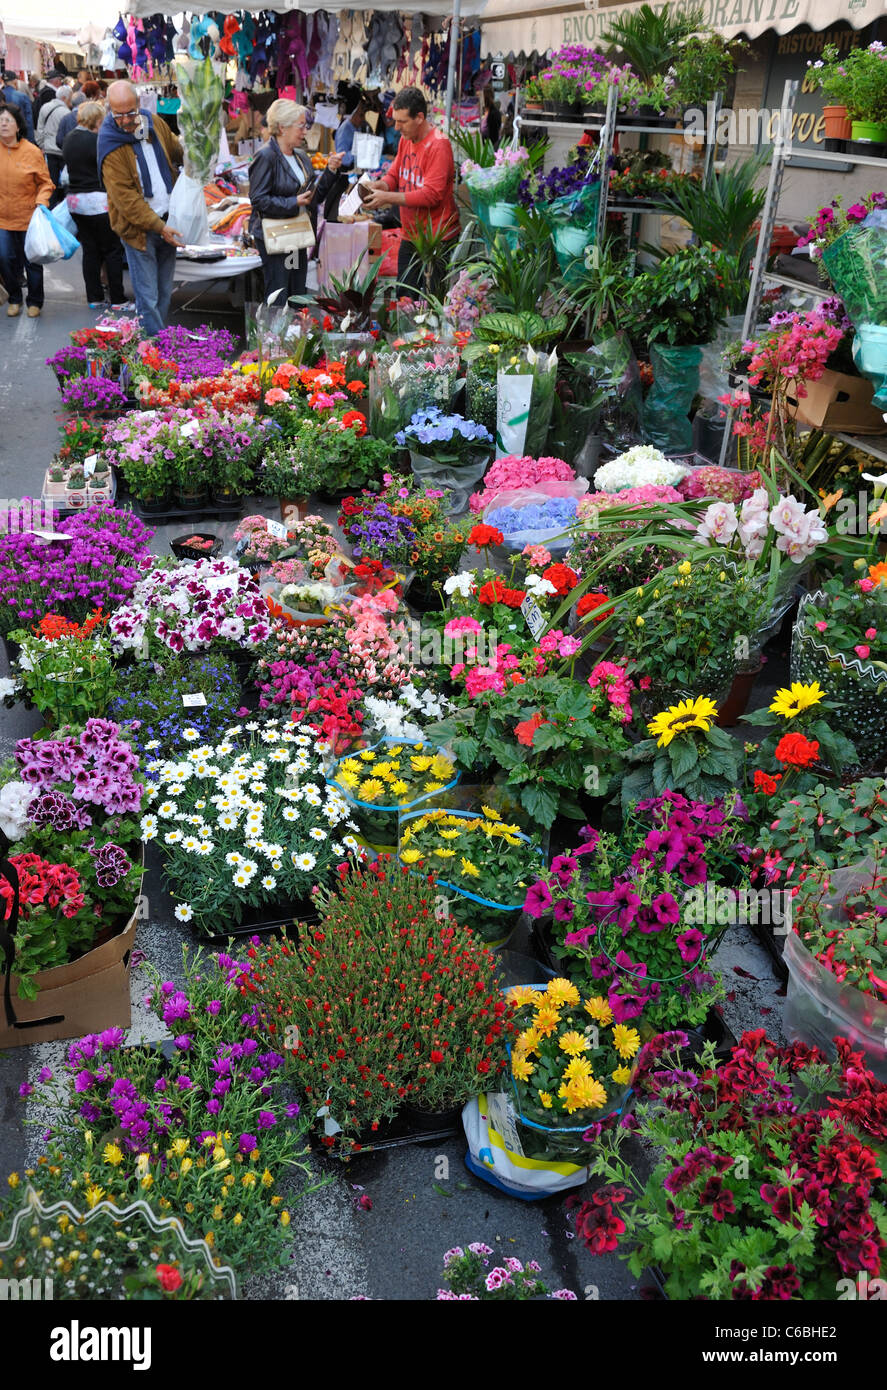 Fiori e piante per la vendita nel mercato della città di Oneglia Imperia  Italia Foto stock - Alamy